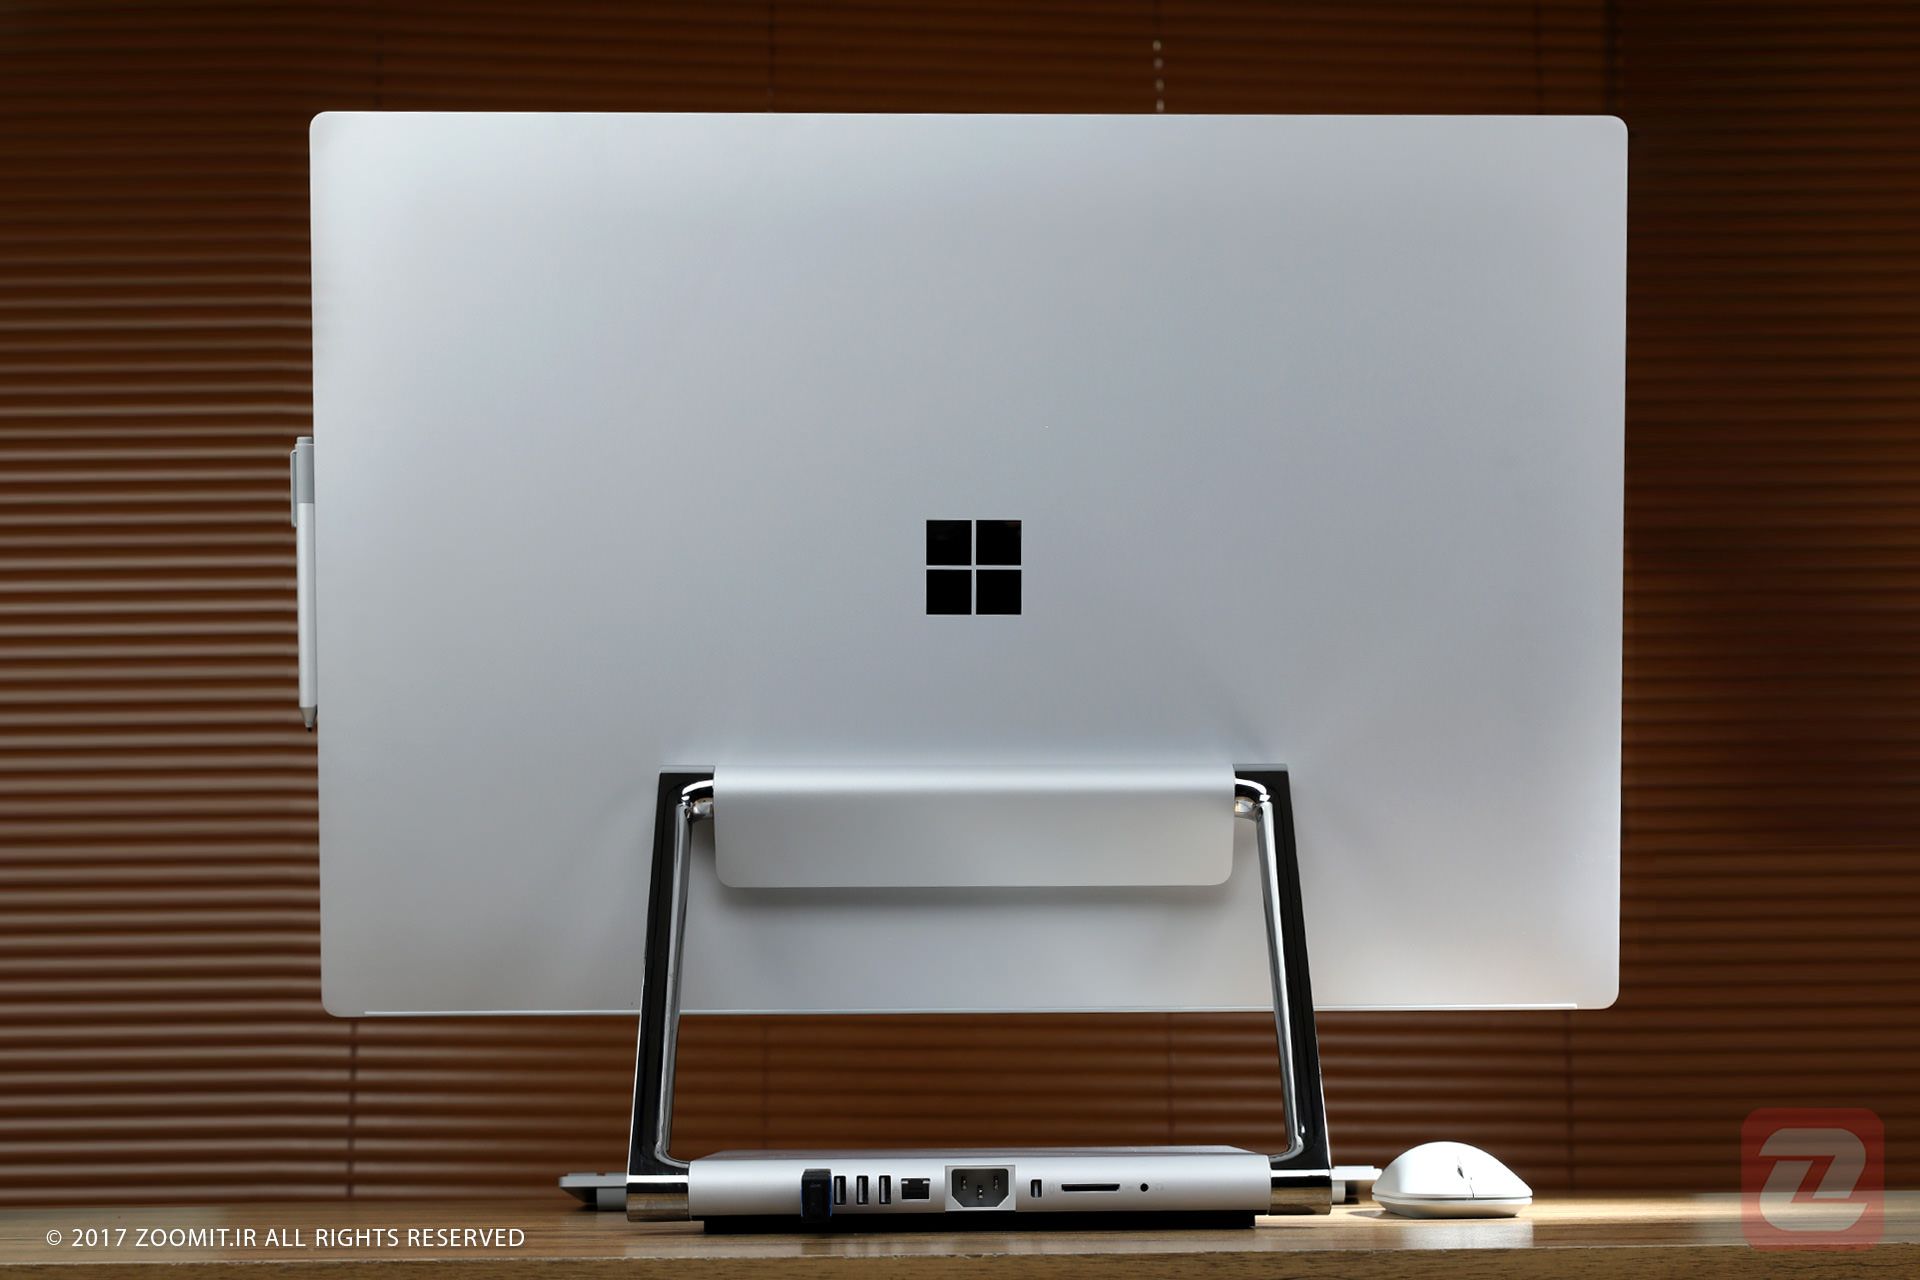 مایکروسافت سرفیس استودیو / Microsoft Surface Studio